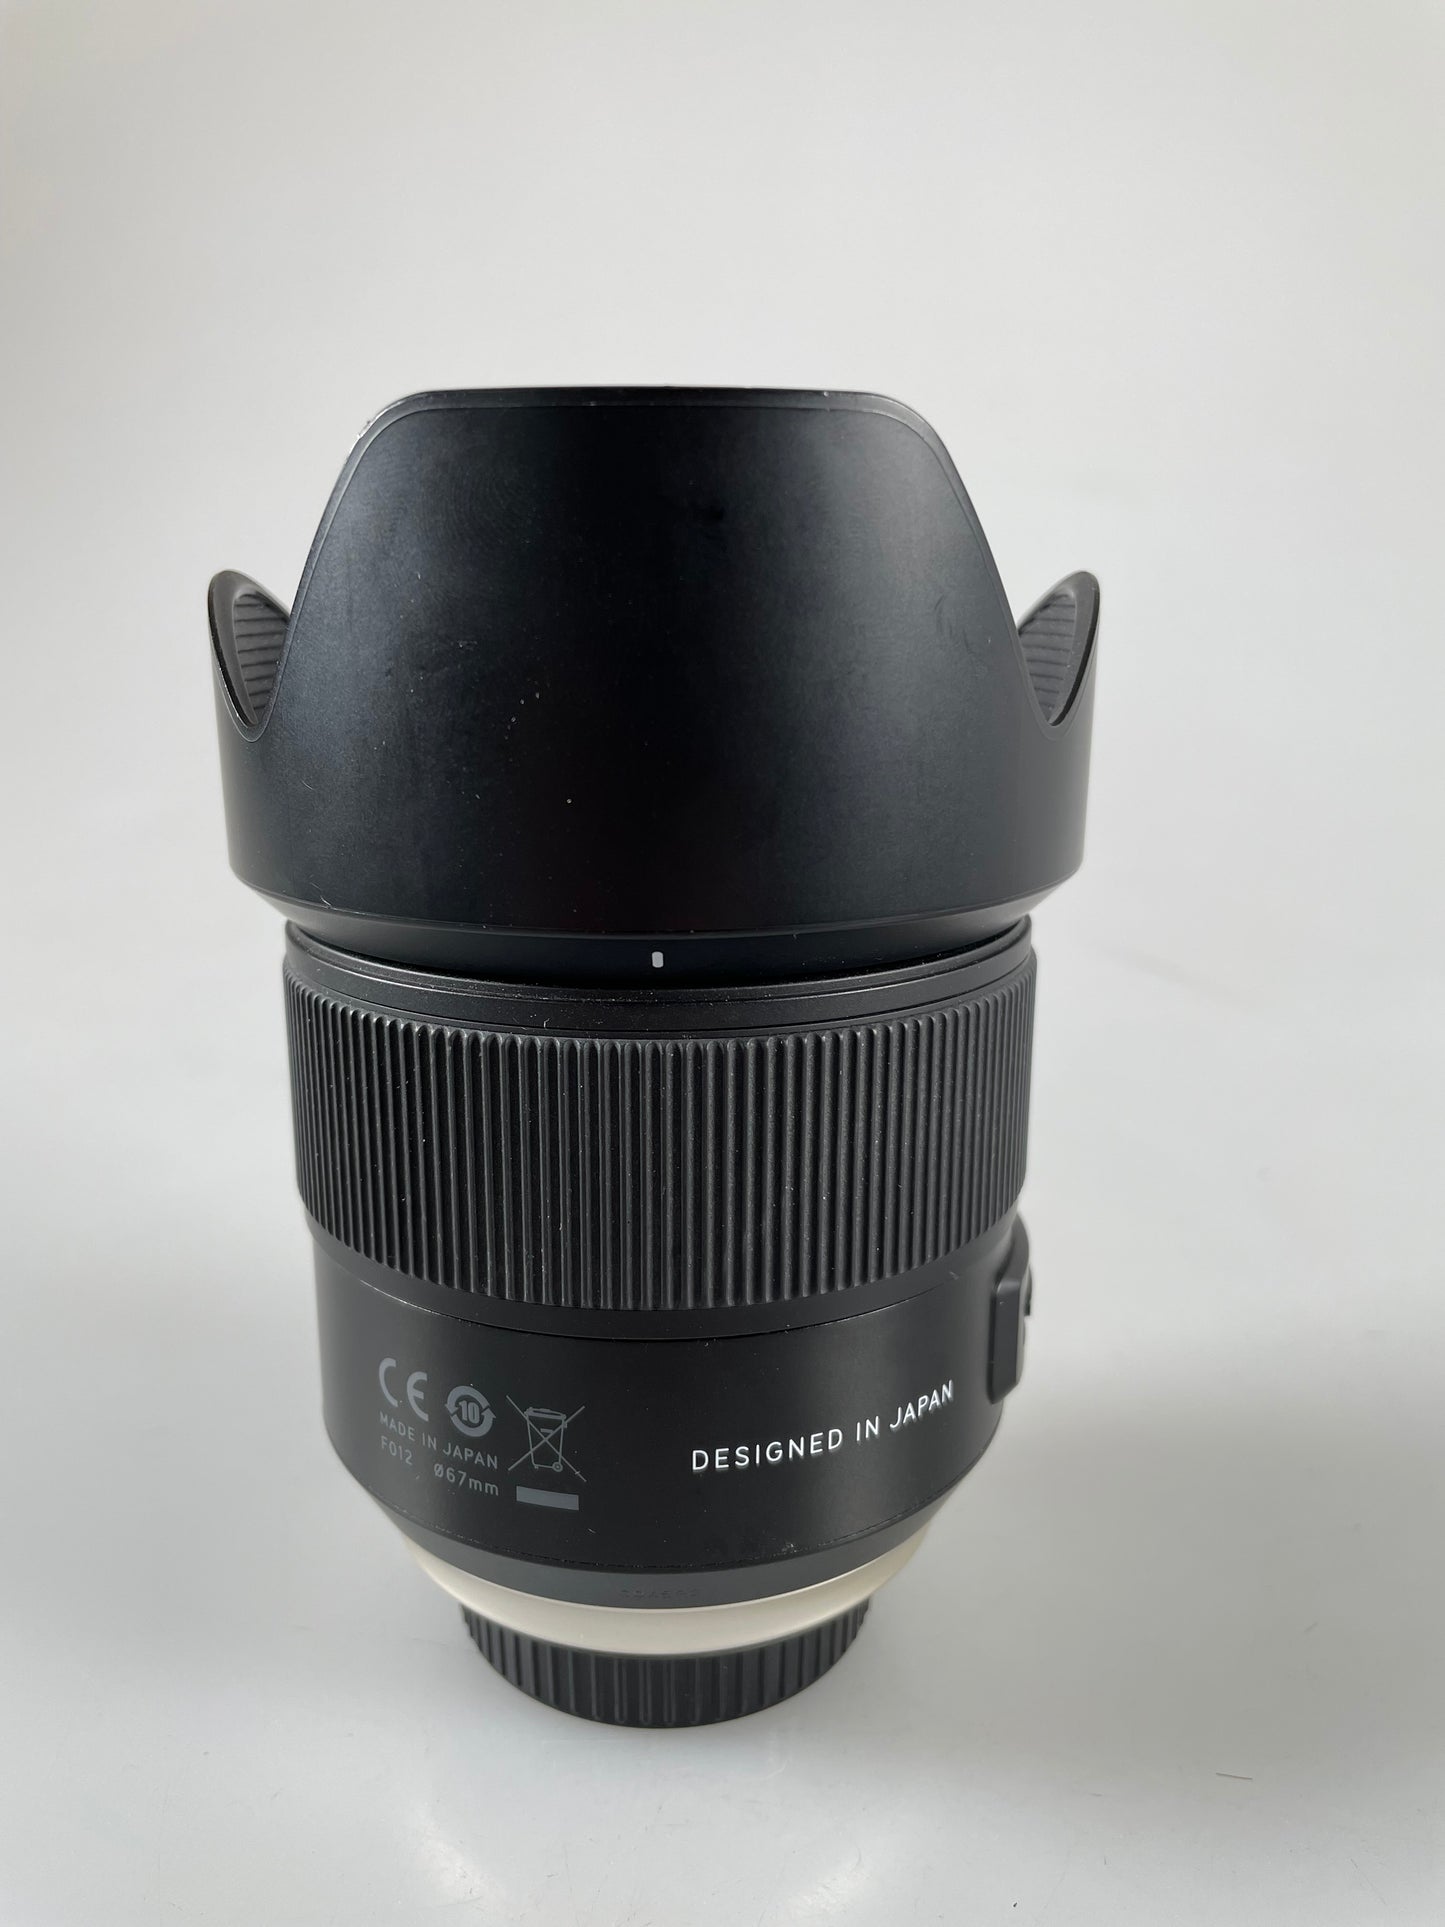 Tamron 35mm F1.8 VC DI USD SP F Mount Prime Lens black Nikon